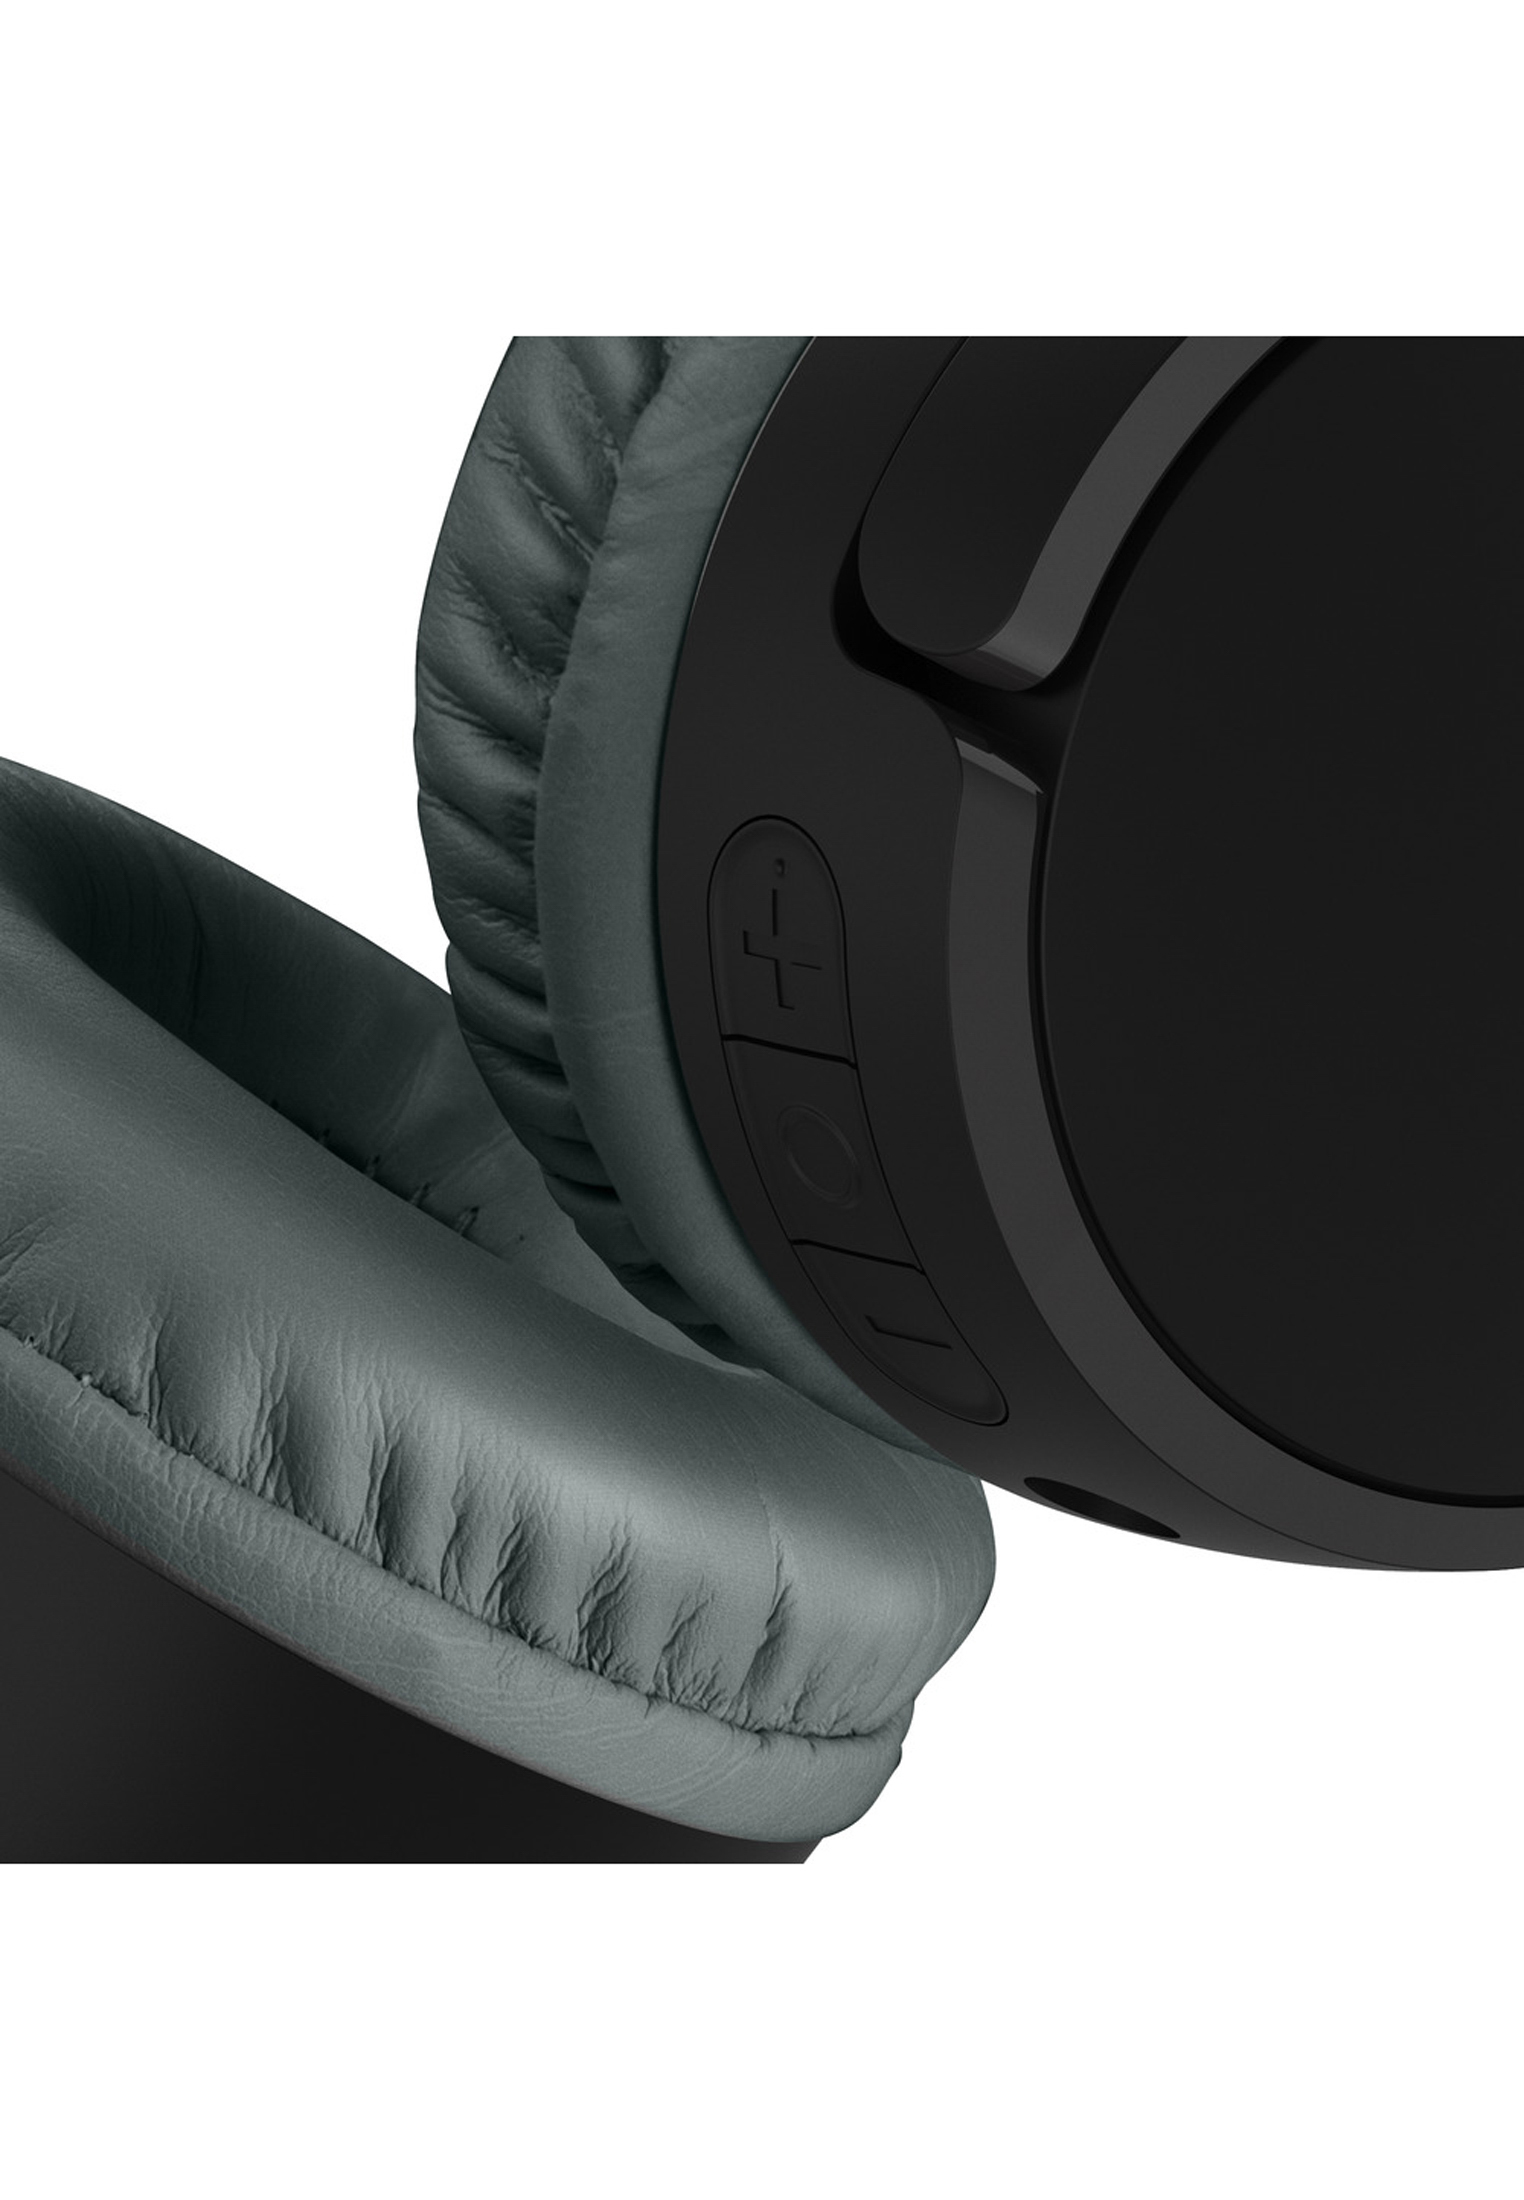 BELKIN SOUNDFORM™ Mini, On-ear On-Ear-Kinderkopfhörer schwarz Bluetooth